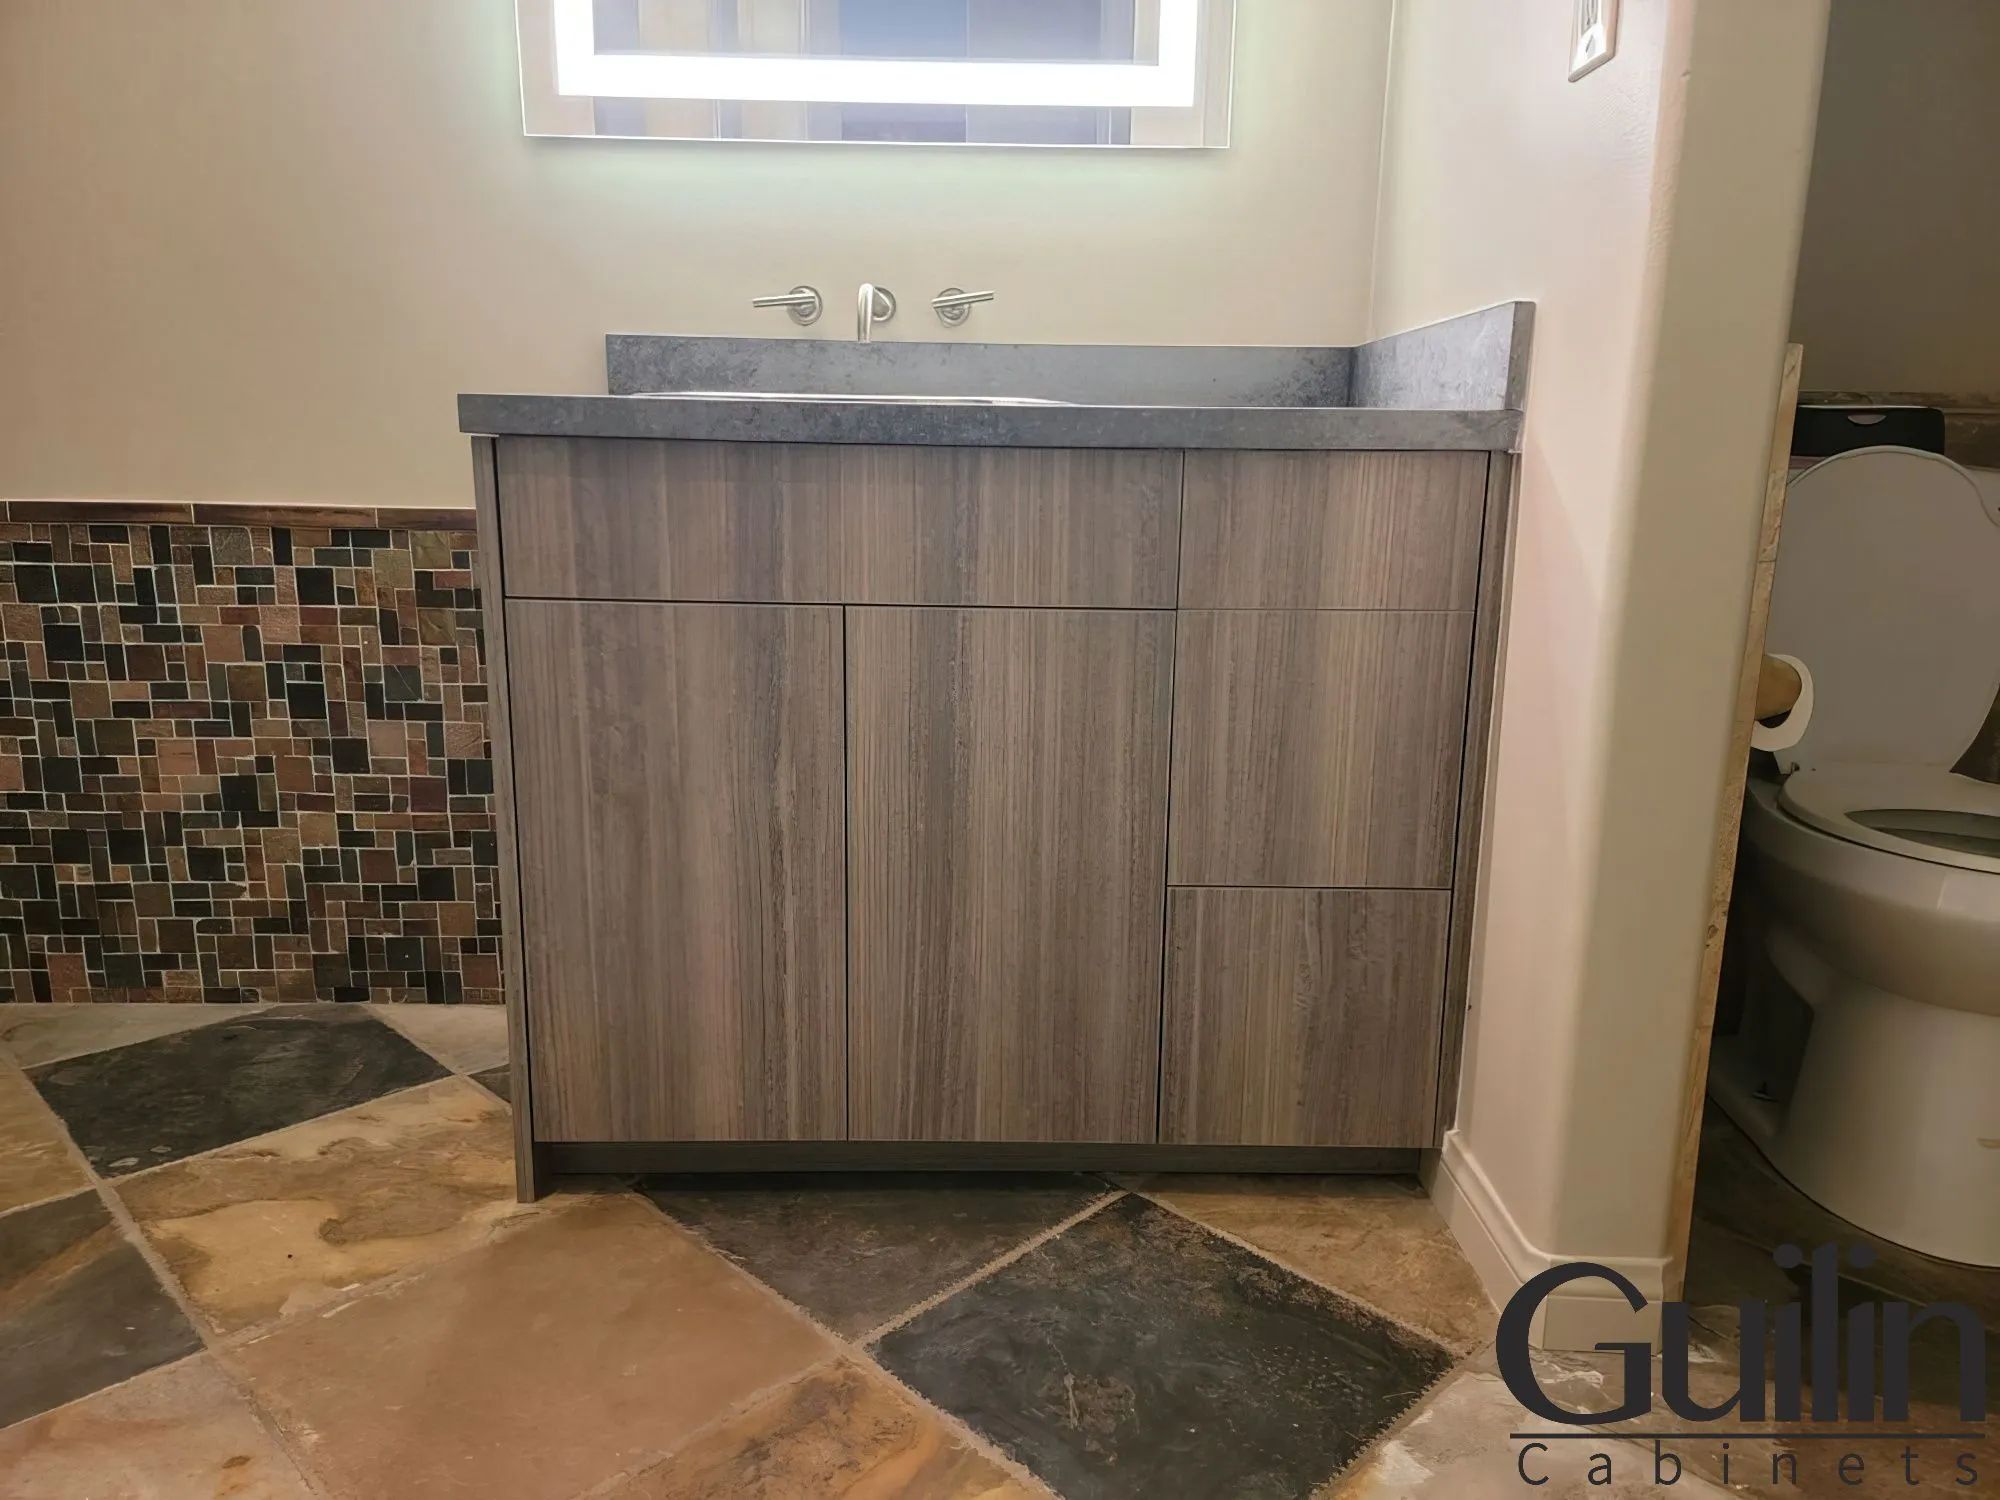 Refacing the Bathroom vanity with wood veneer - Guilin Cabinets